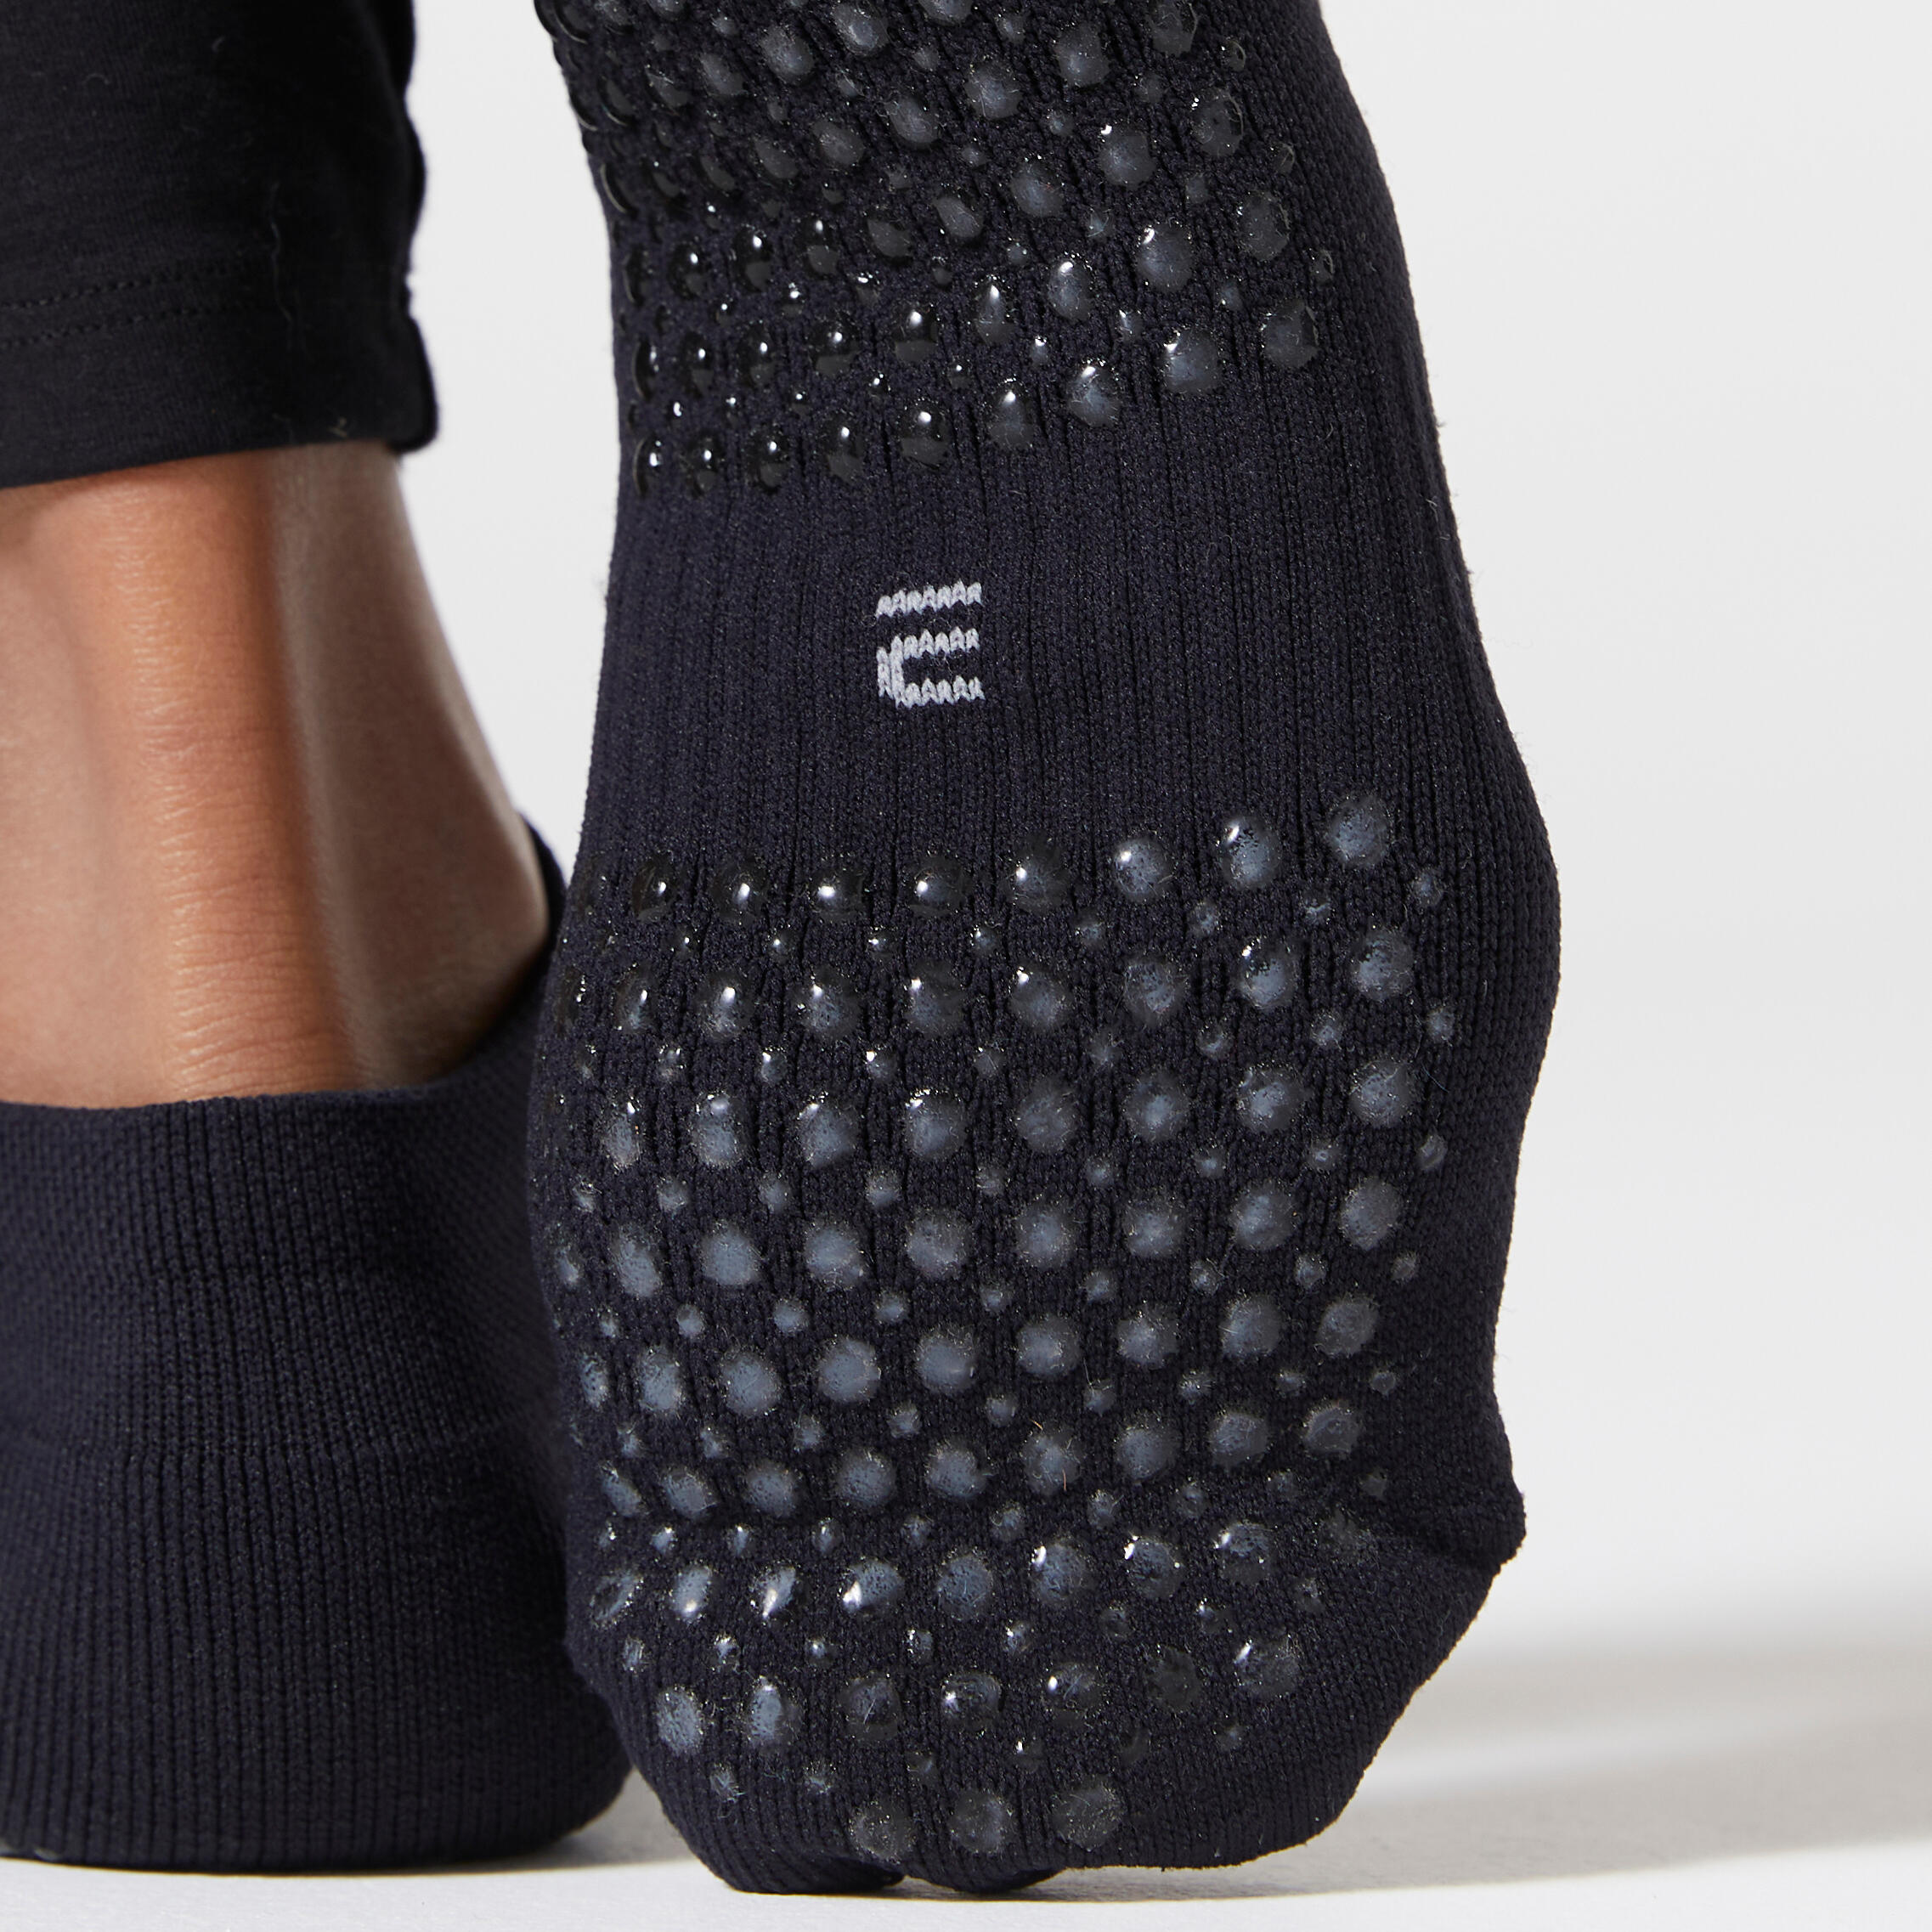 Women's Non-Slip Fitness Socks 500 - Black 6/6